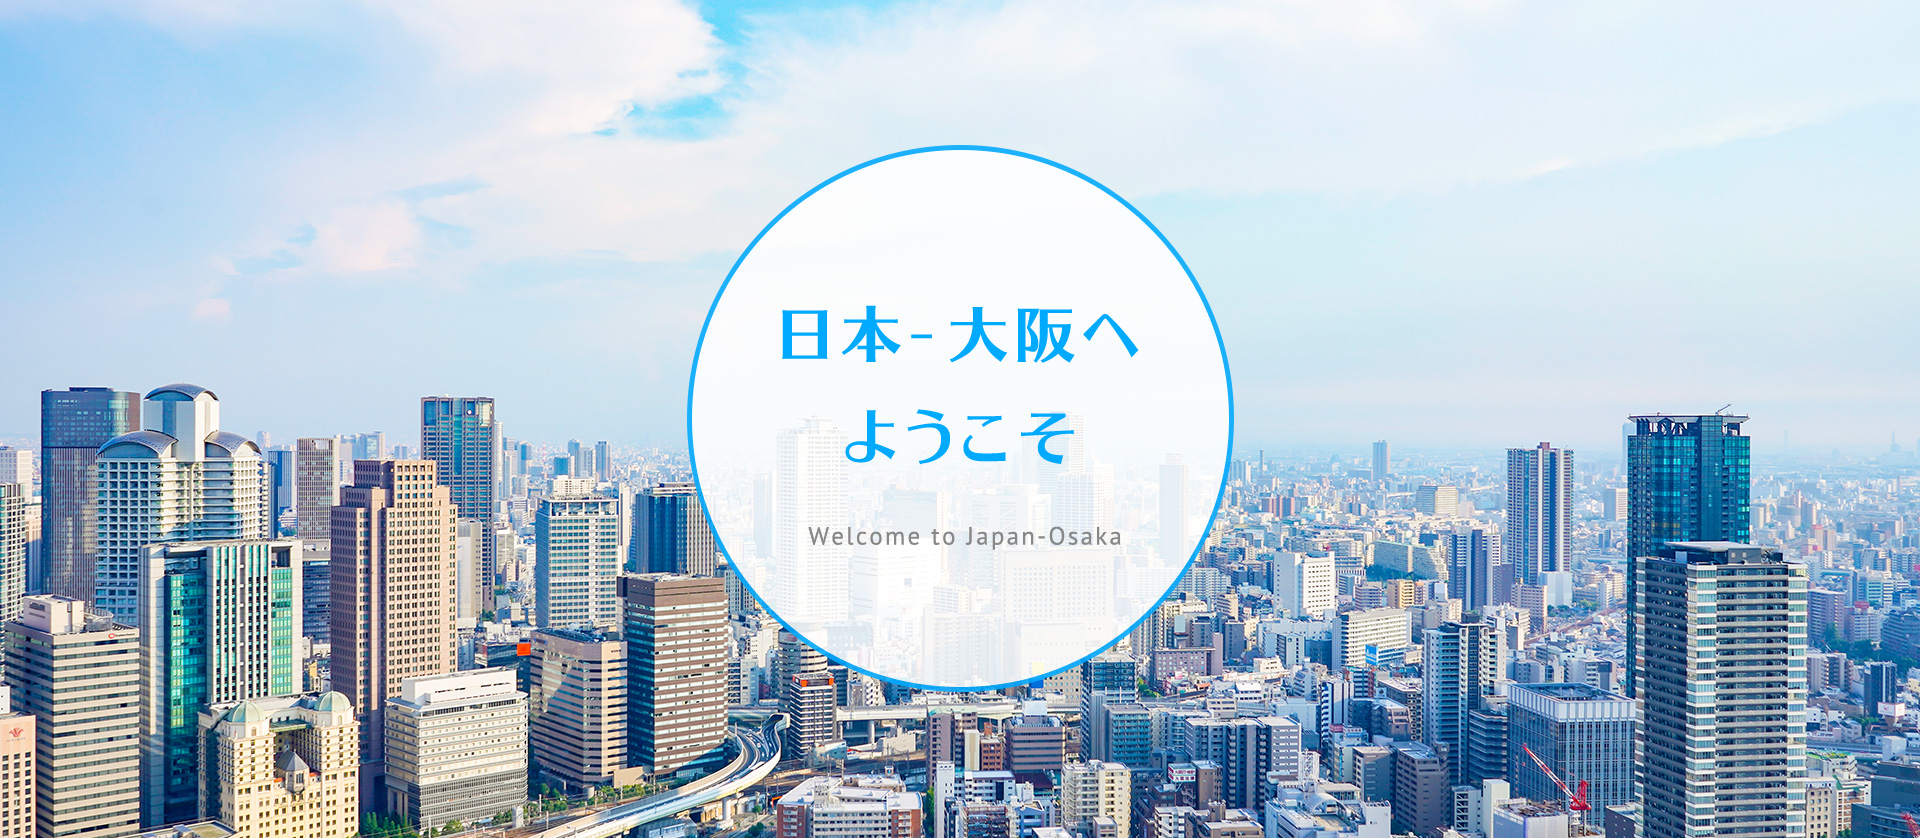 日本 - 大阪へようこそ Welcome to Japan-Osaka